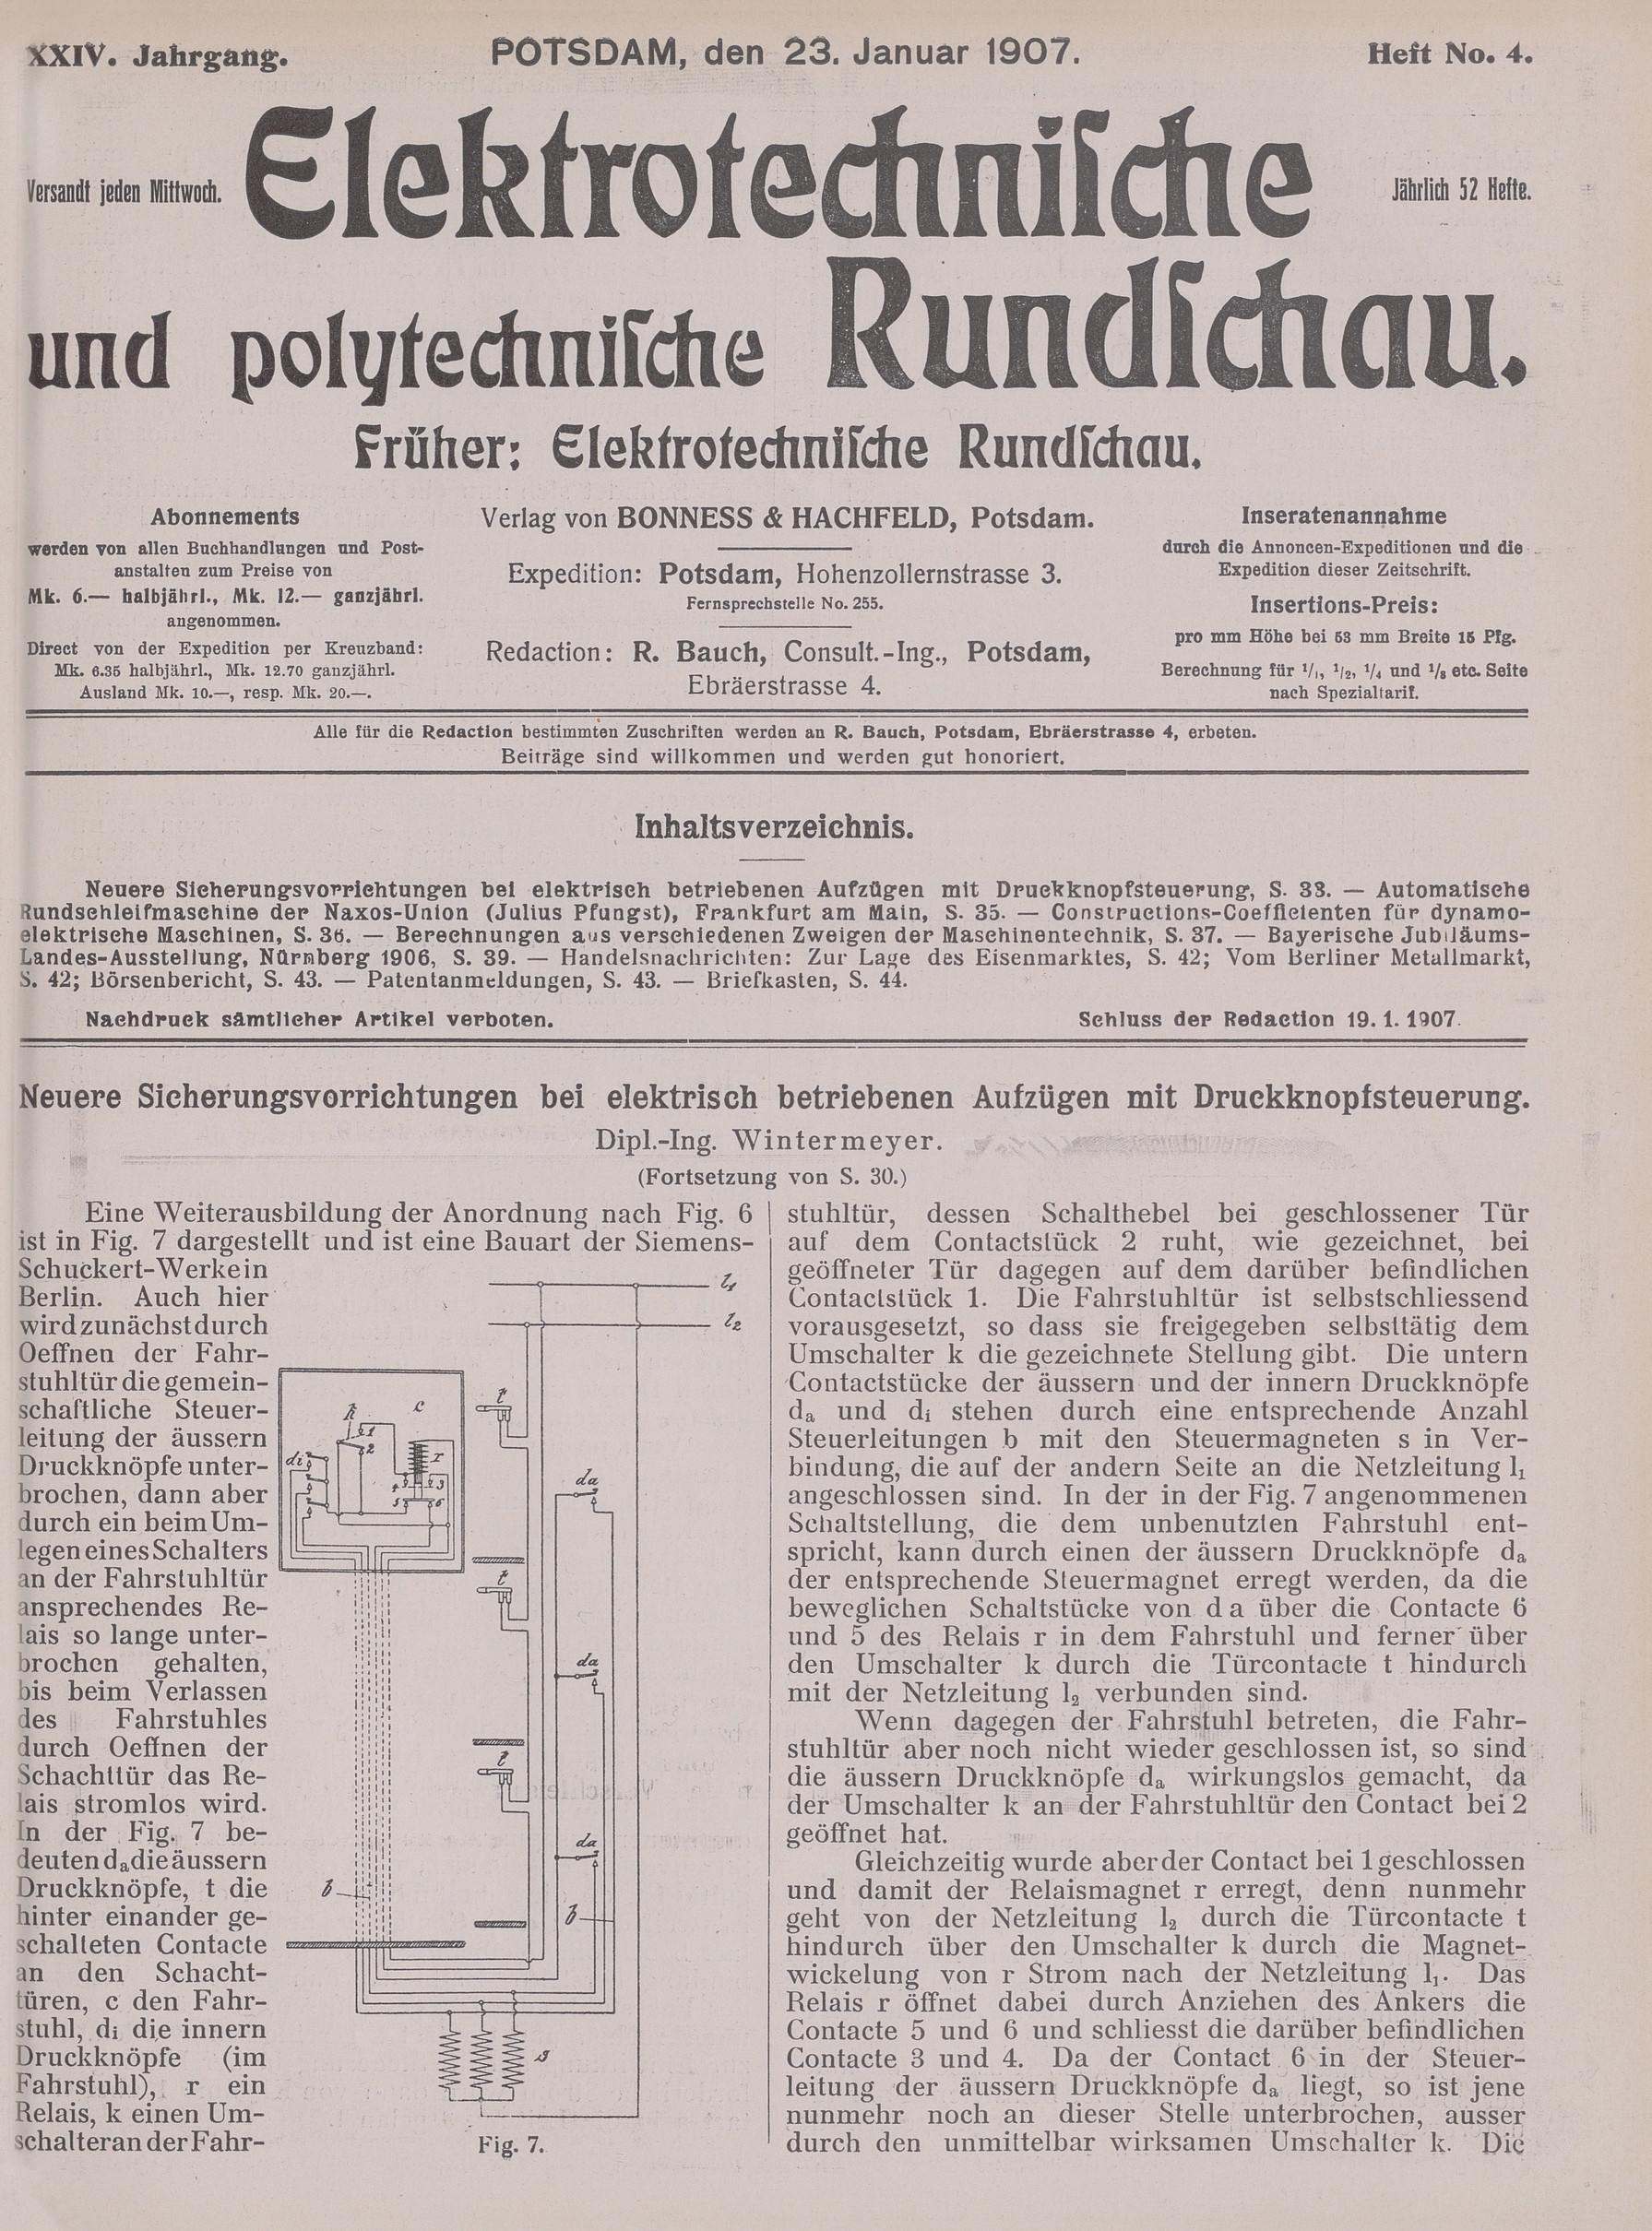 Elektrotechnische und polytechnische Rundschau, XXIV. Jahrgang, Heft No. 4